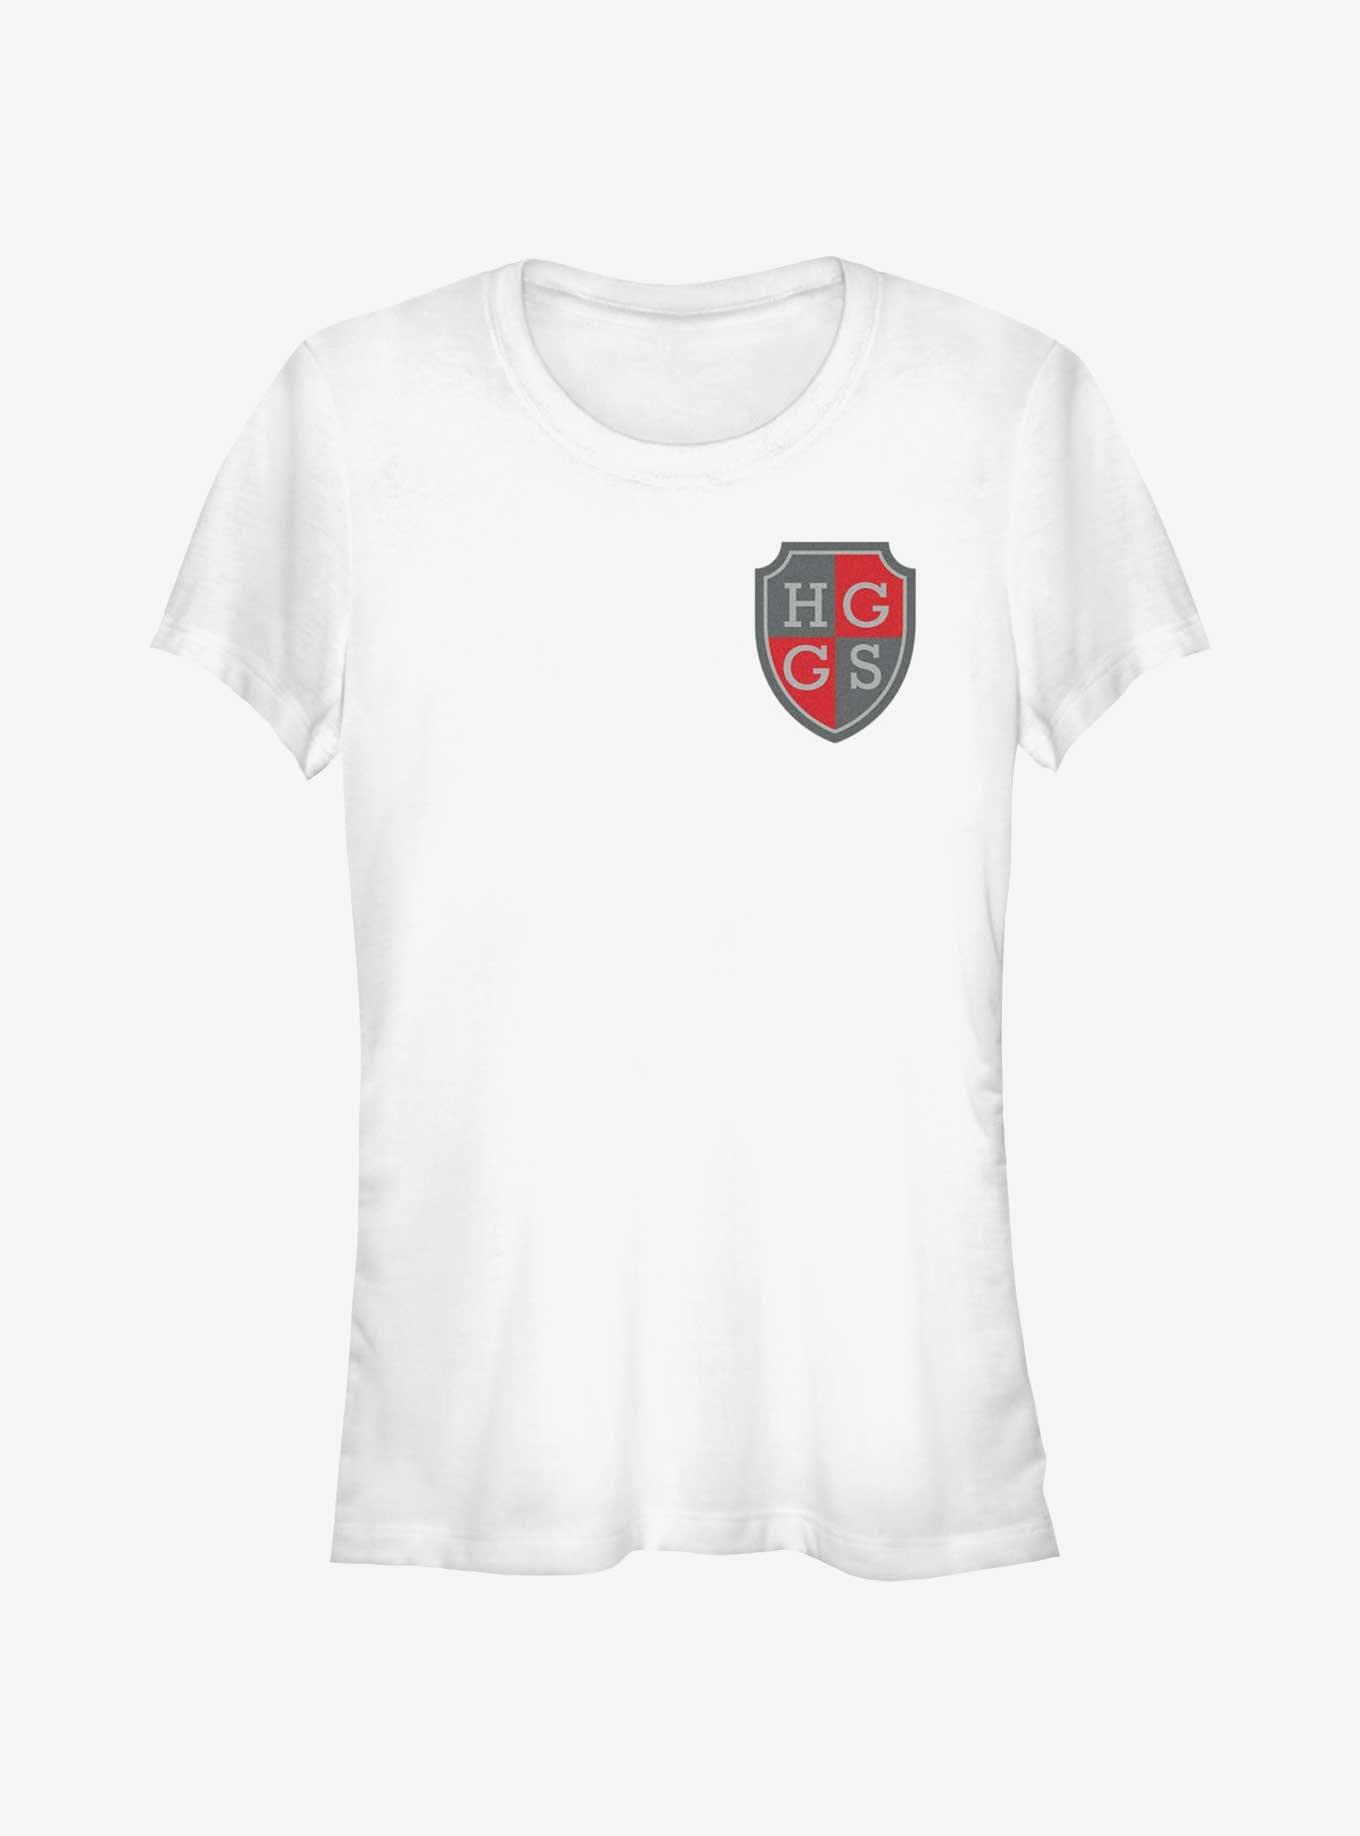 Heartstopper Harvey Greene Grammar School Pocket Crest Girls T-Shirt, WHITE, hi-res